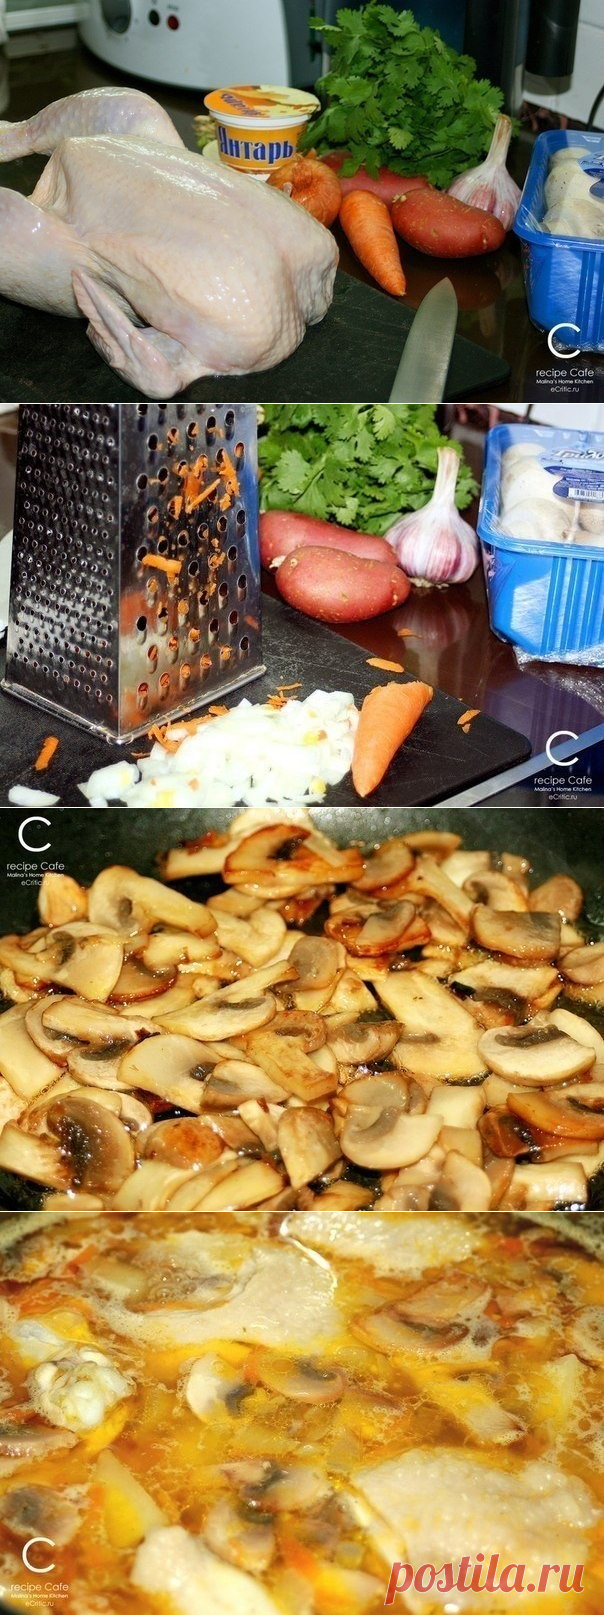 Как приготовить сырно-грибной суп 
=0,5 кг курицы
3-4 средних картофелины
1 морковь
1 луковица
1 зубчик чеснока
1 уп. плав. сыра
8-10 шампиньонов
30-40гр. слив. масла
1ст.л. раст. масла
Зелень петрушки, кинзы, зеленый лук